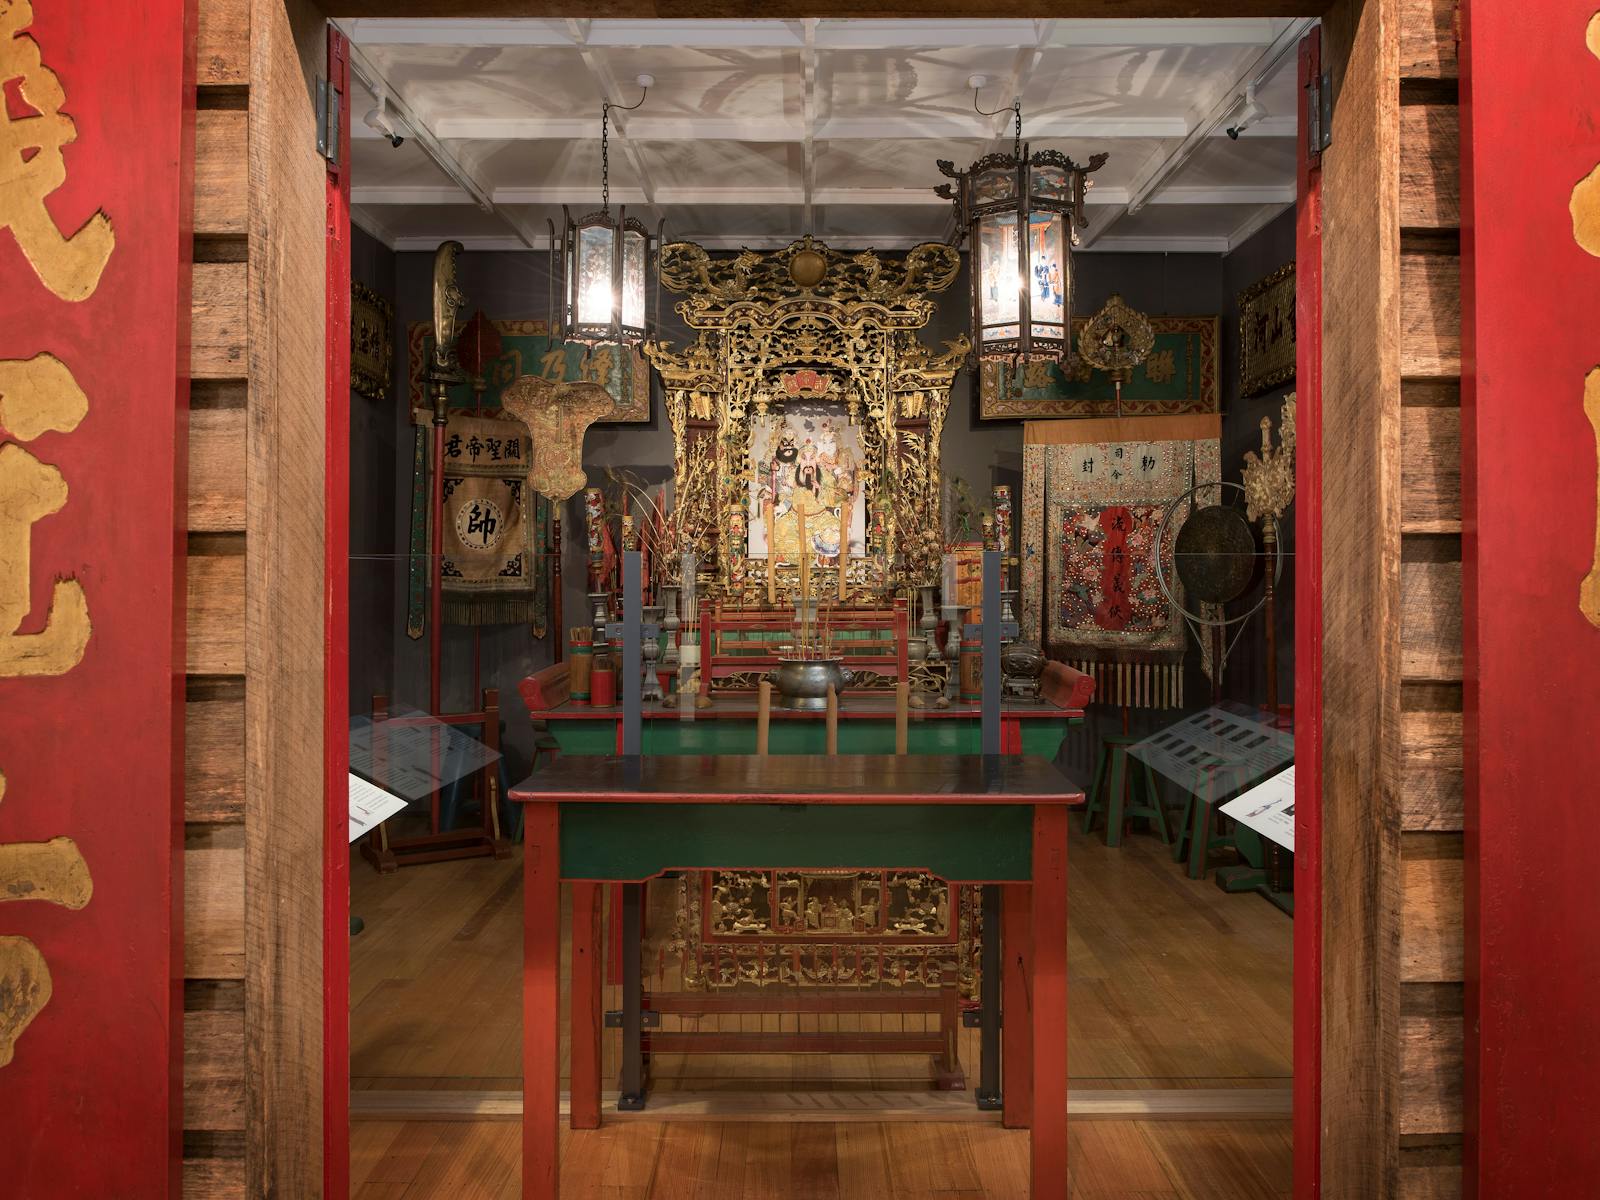 Guan Di Temple exhibition interior